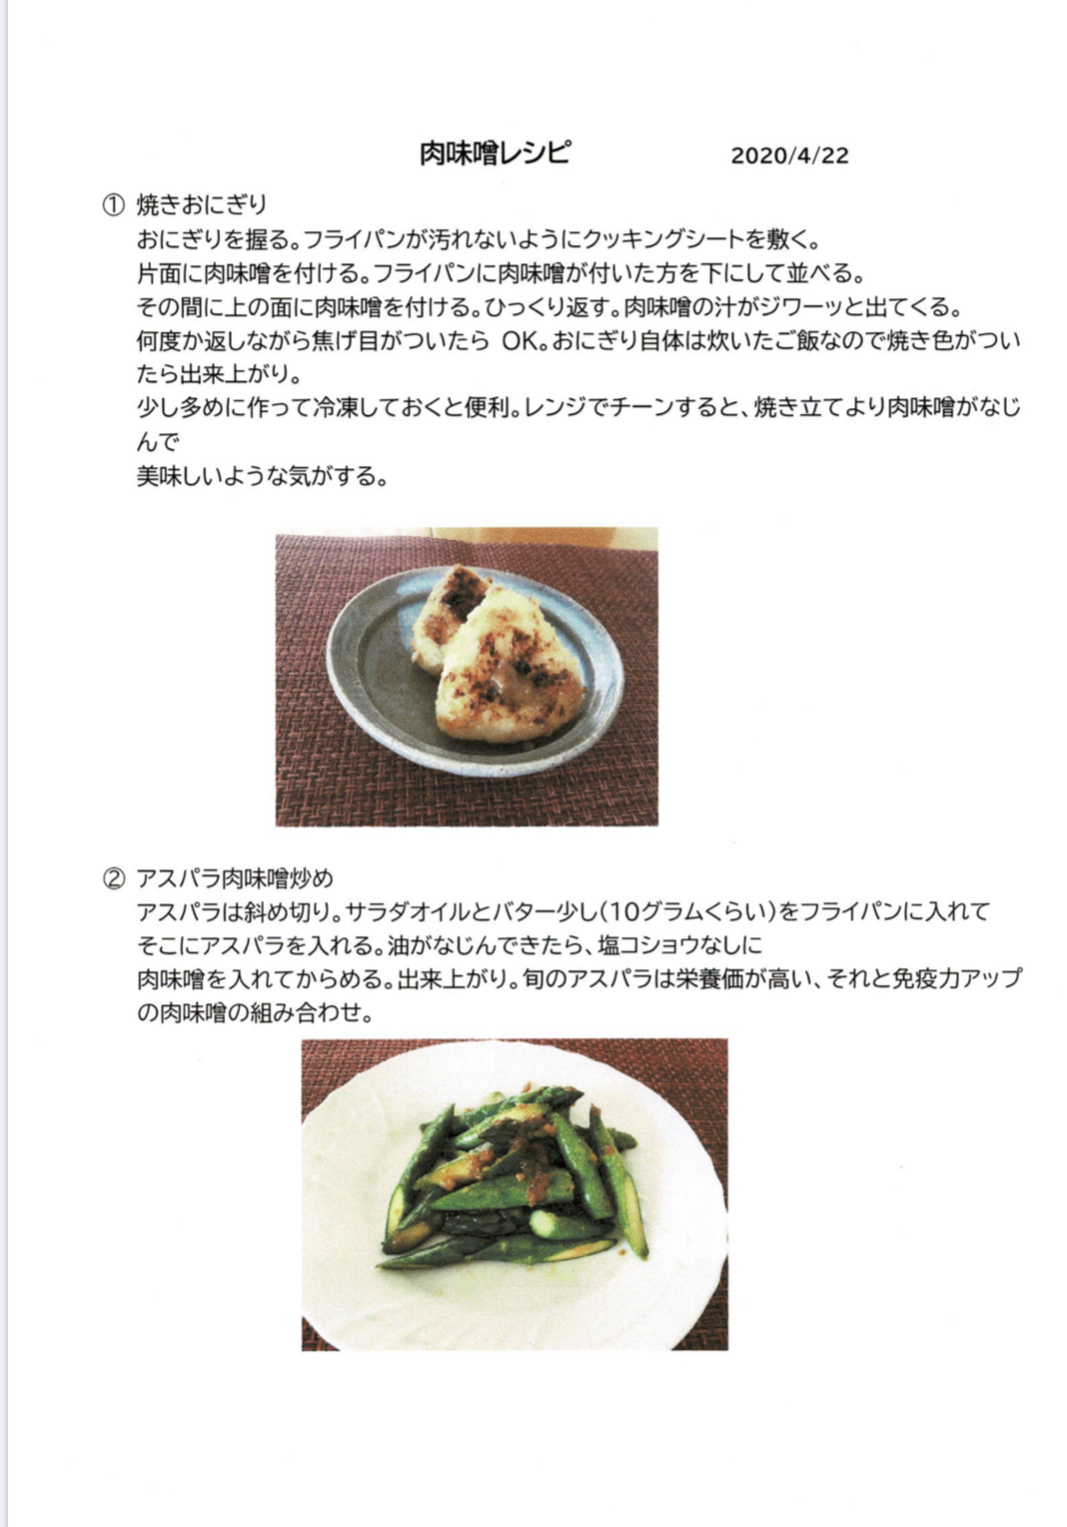 万能 奇跡の肉味噌を使った万能レシピ Vol 1 五感で楽しむ串揚げ屋 生粋namaiki